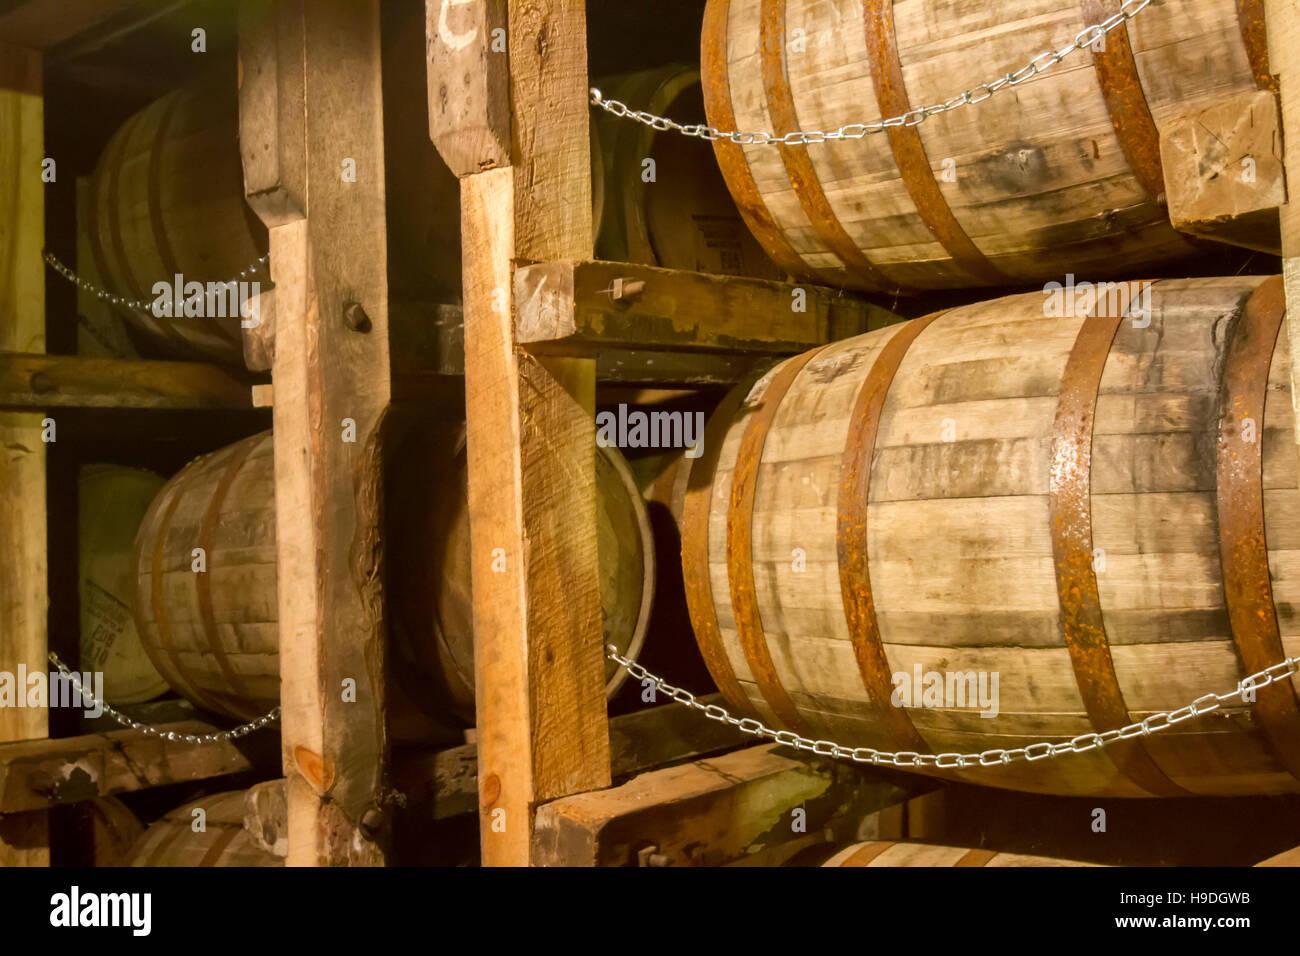 Bourbon barrels in rik house warehouse. Stock Photo